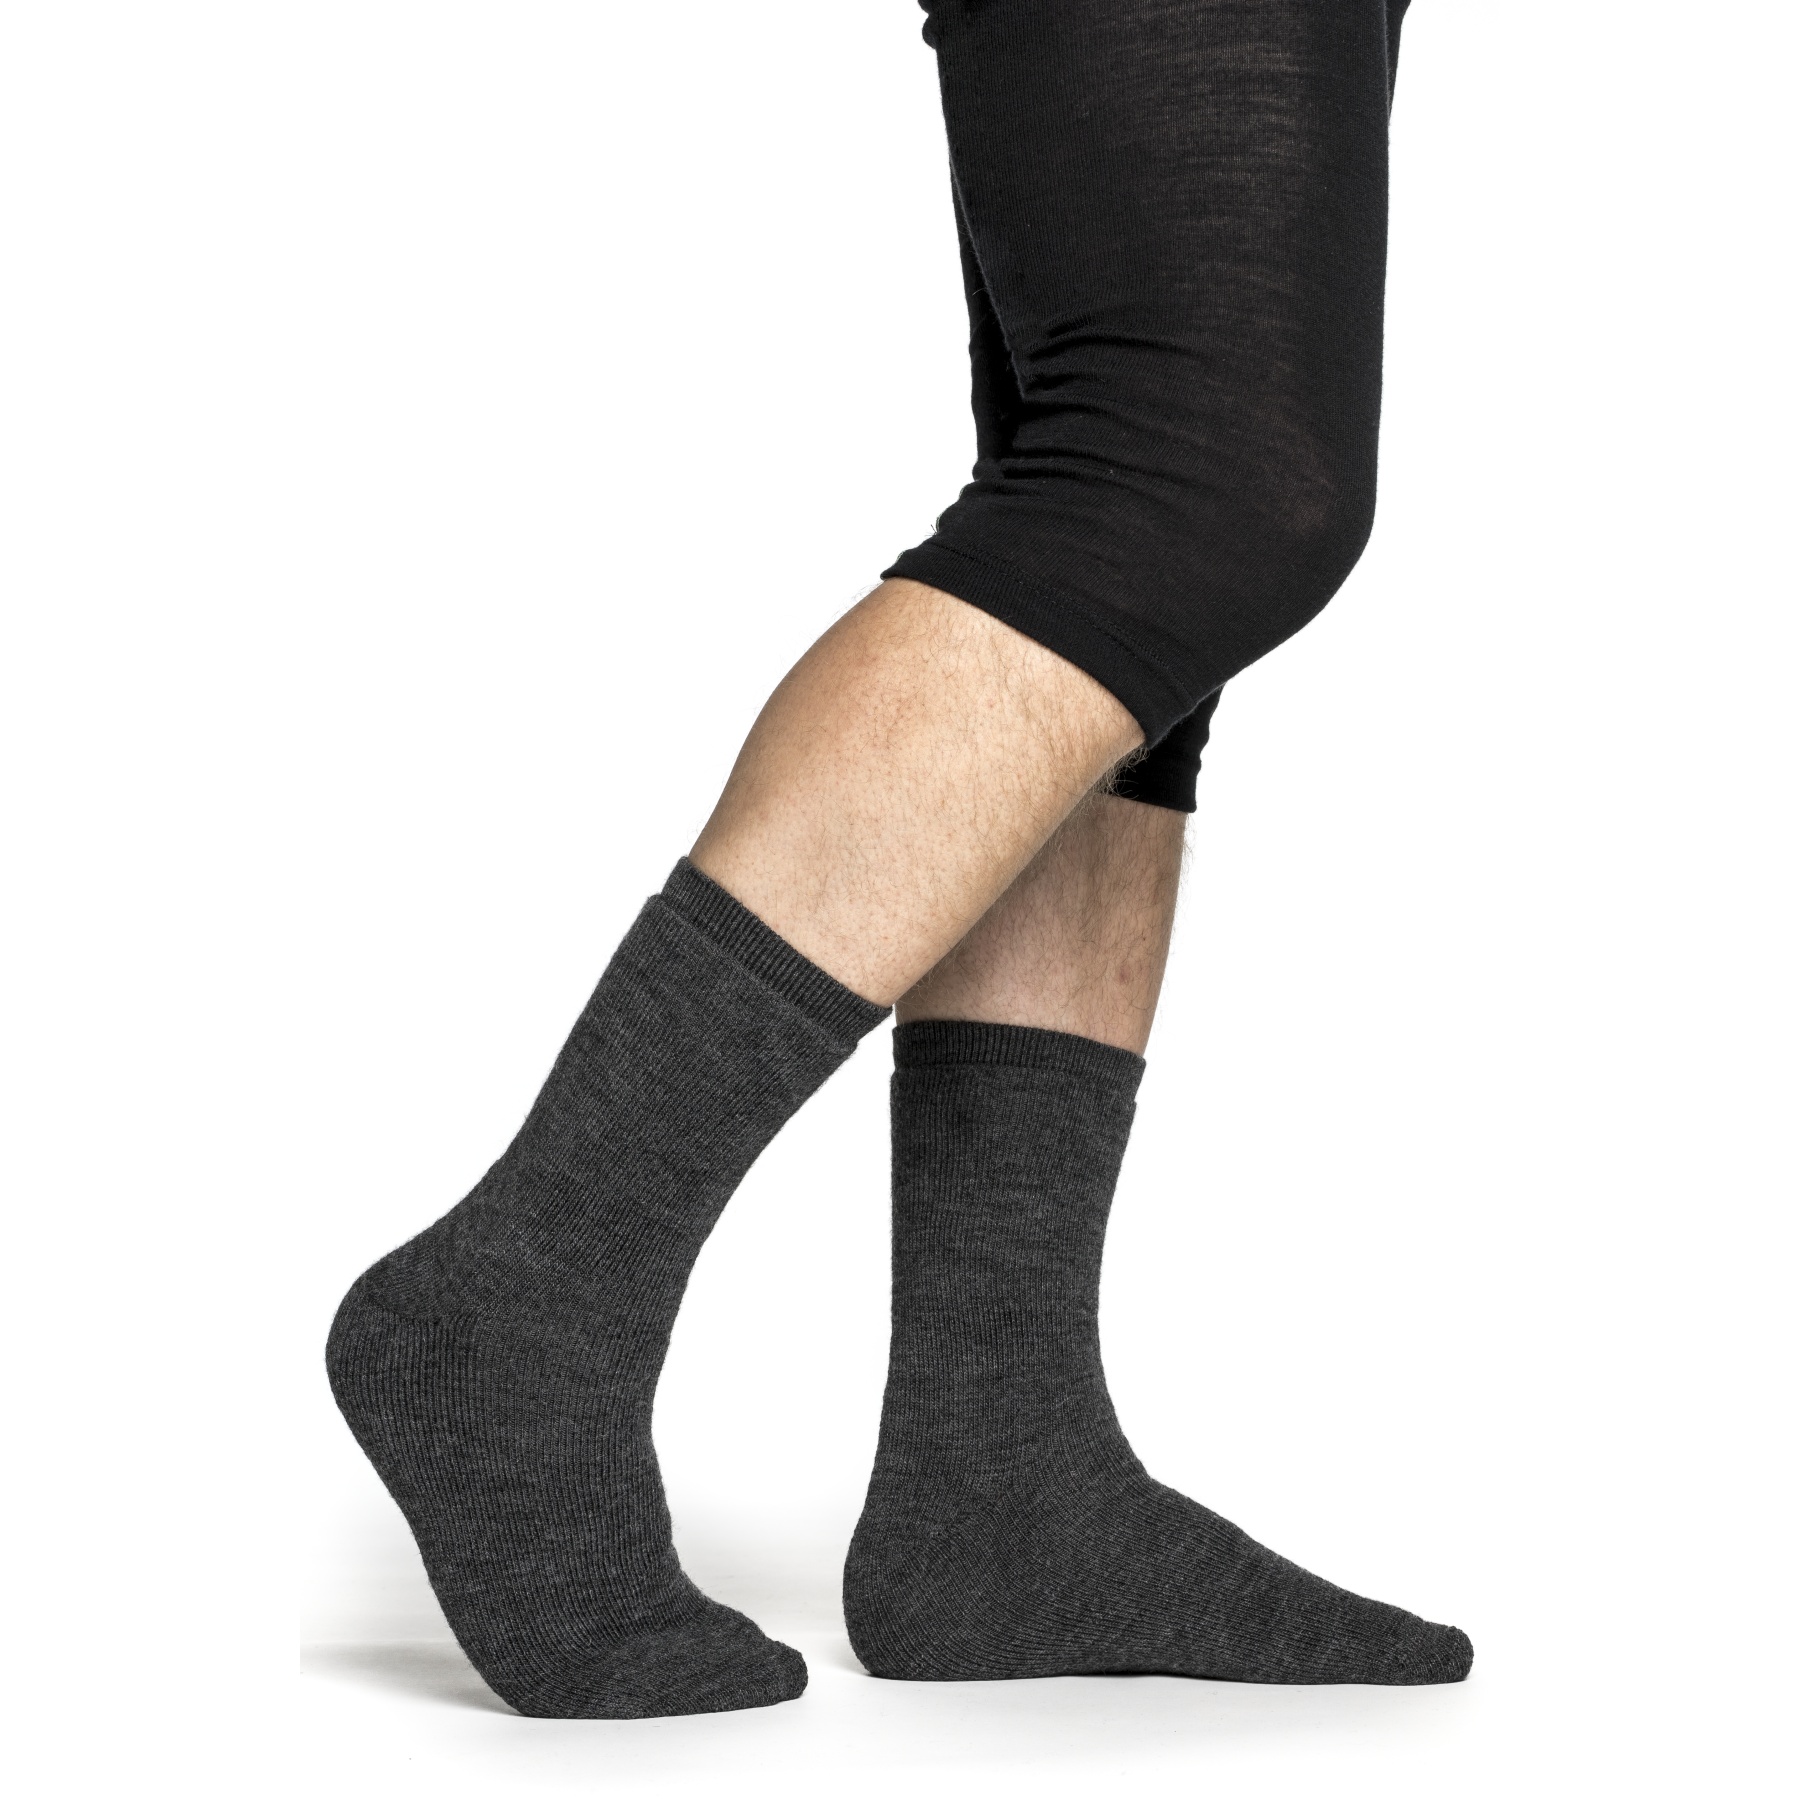 Productfoto van Woolpower Socks 400 - grey